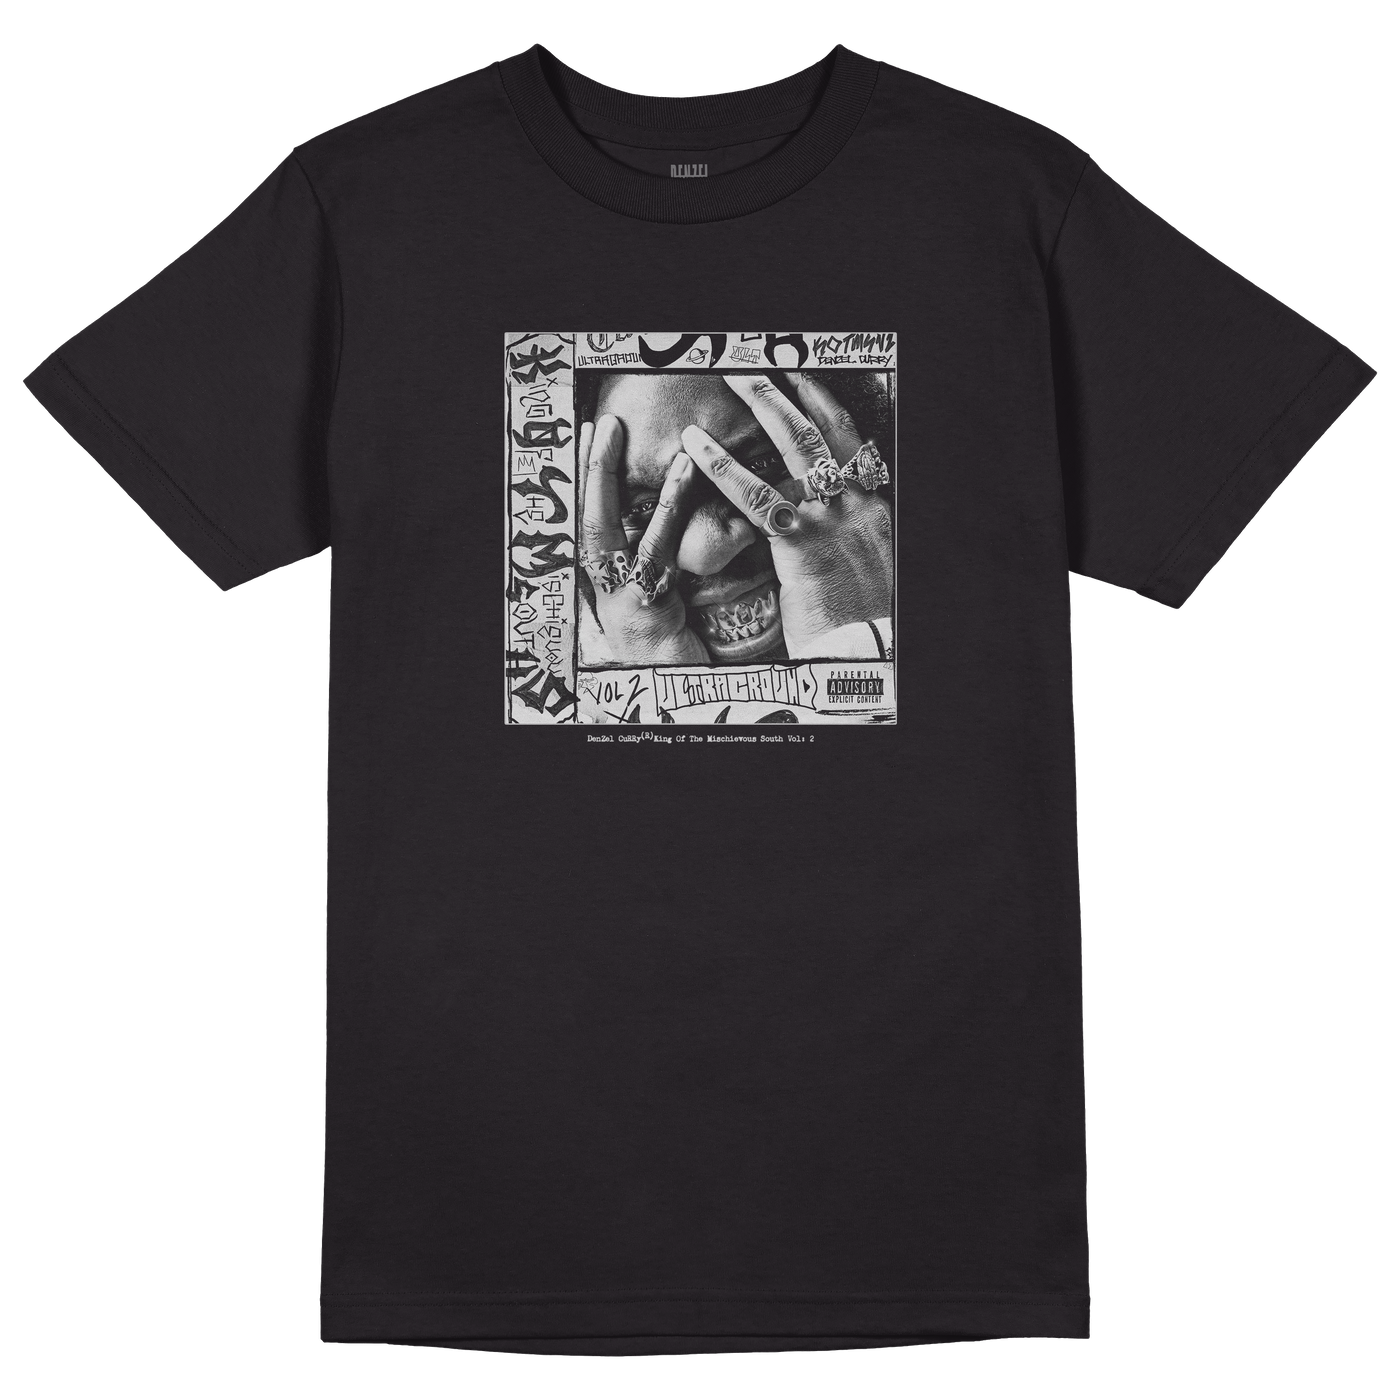 KOTMS VOL II Album T-Shirt